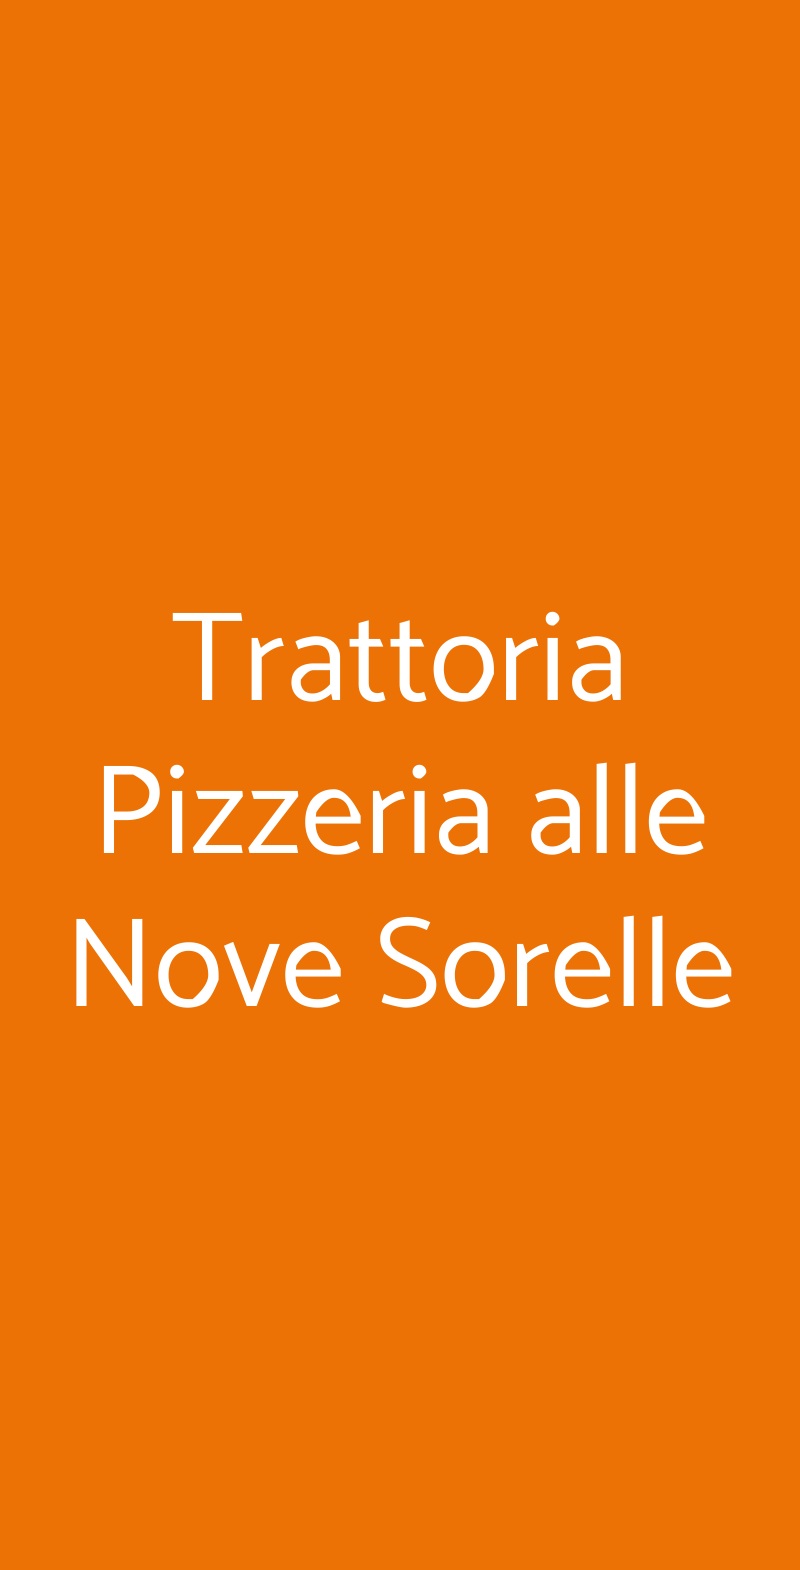 Trattoria Pizzeria alle Nove Sorelle Trieste menù 1 pagina